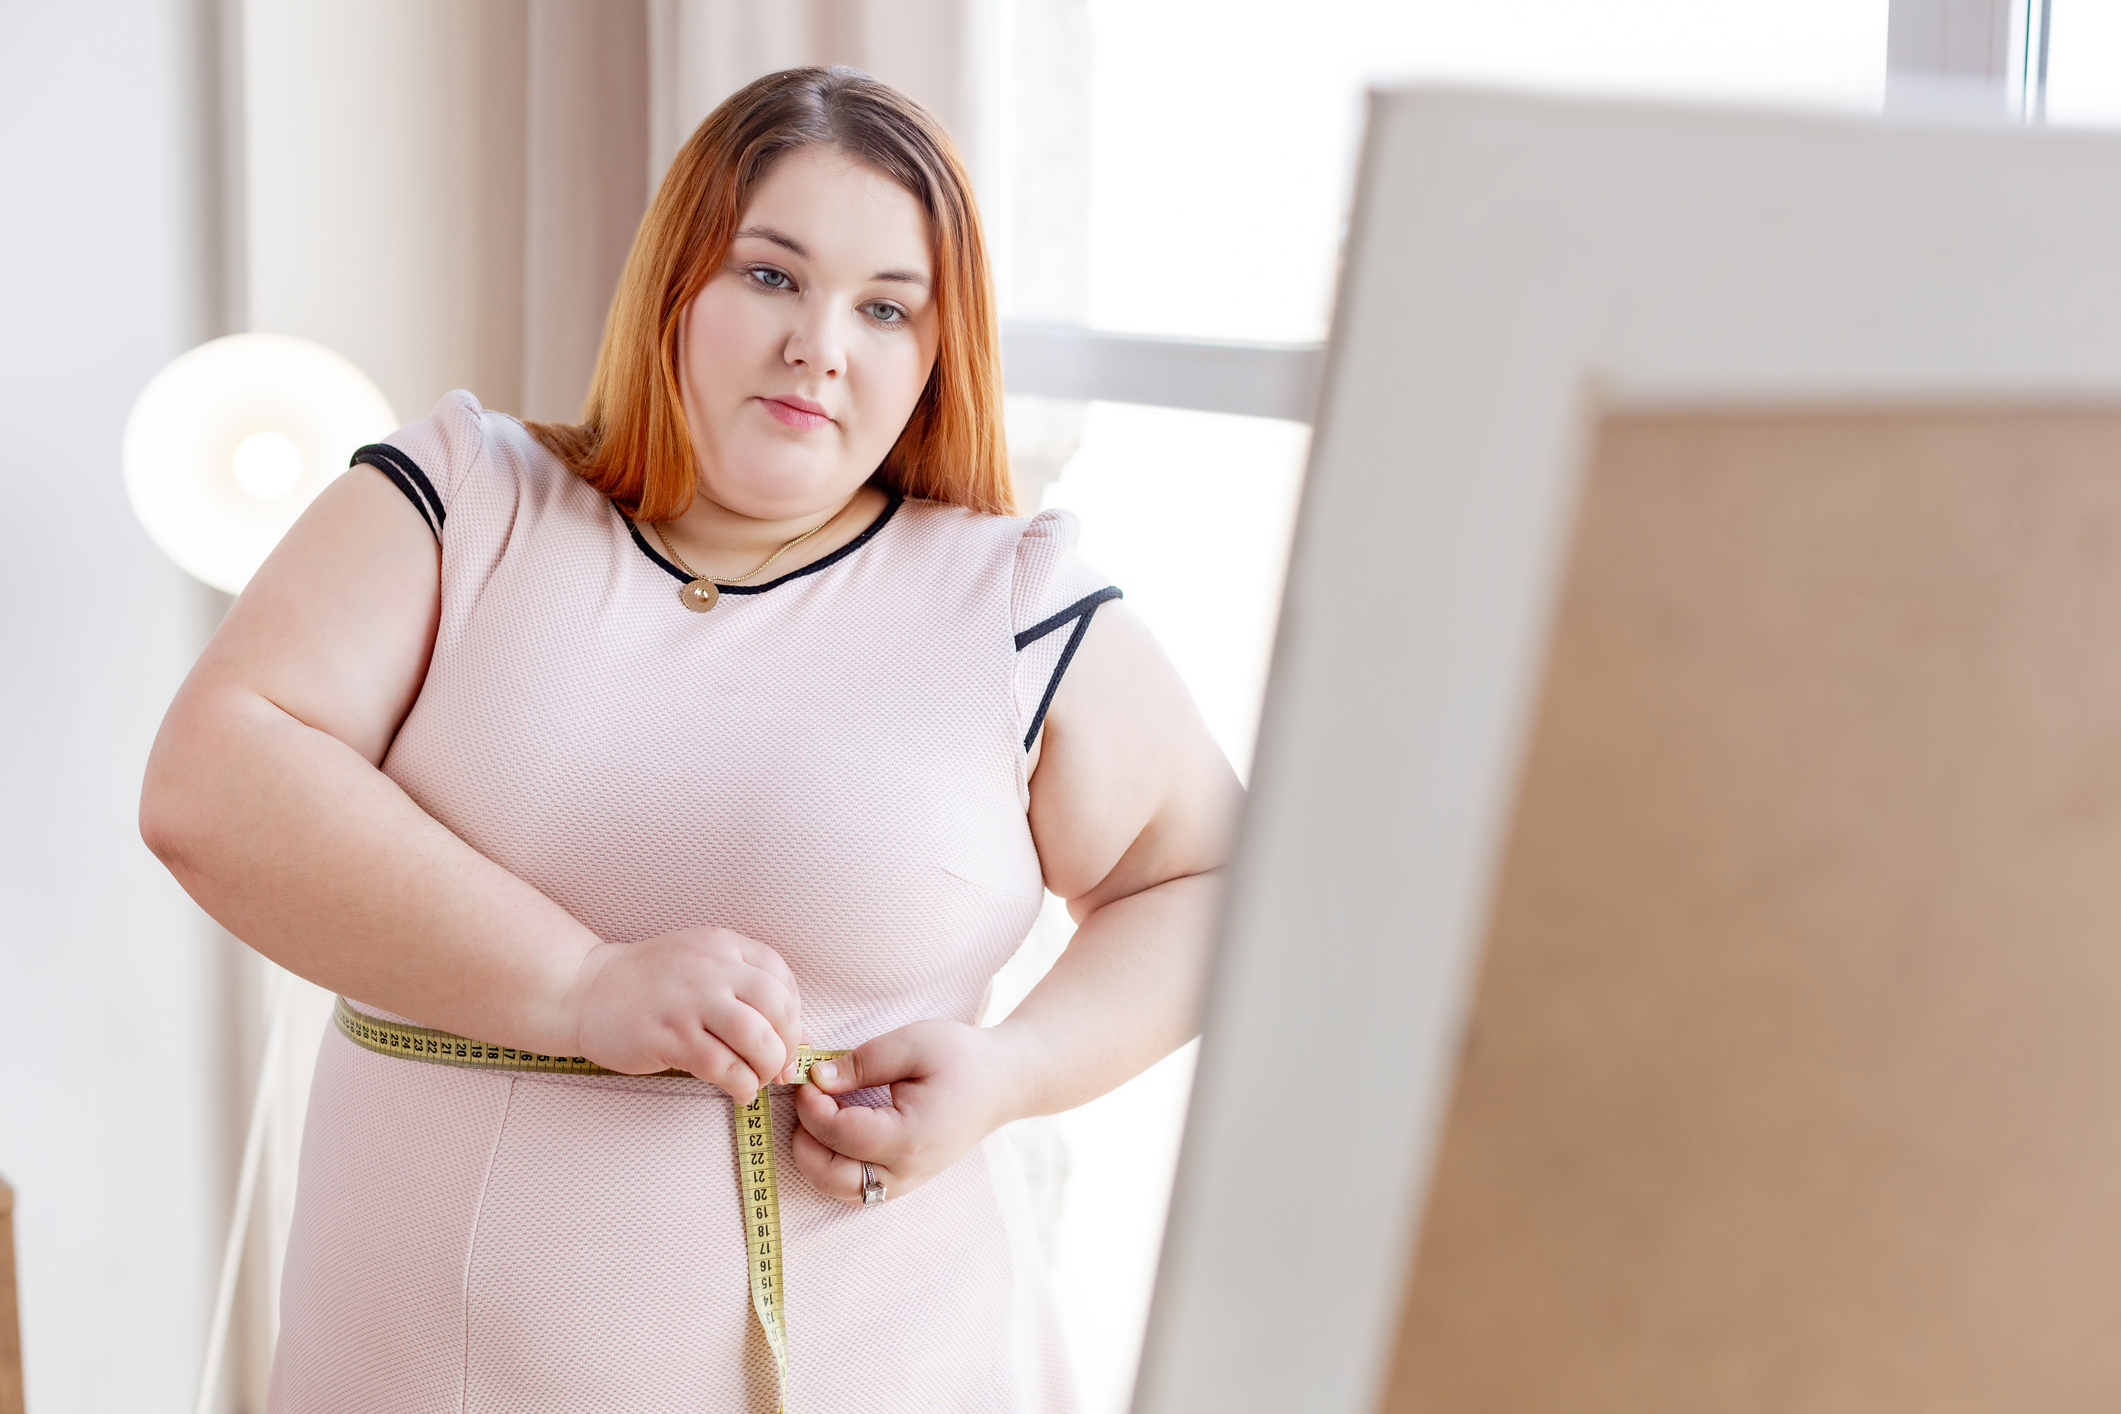 Что происходит с весом во время менопаузы?